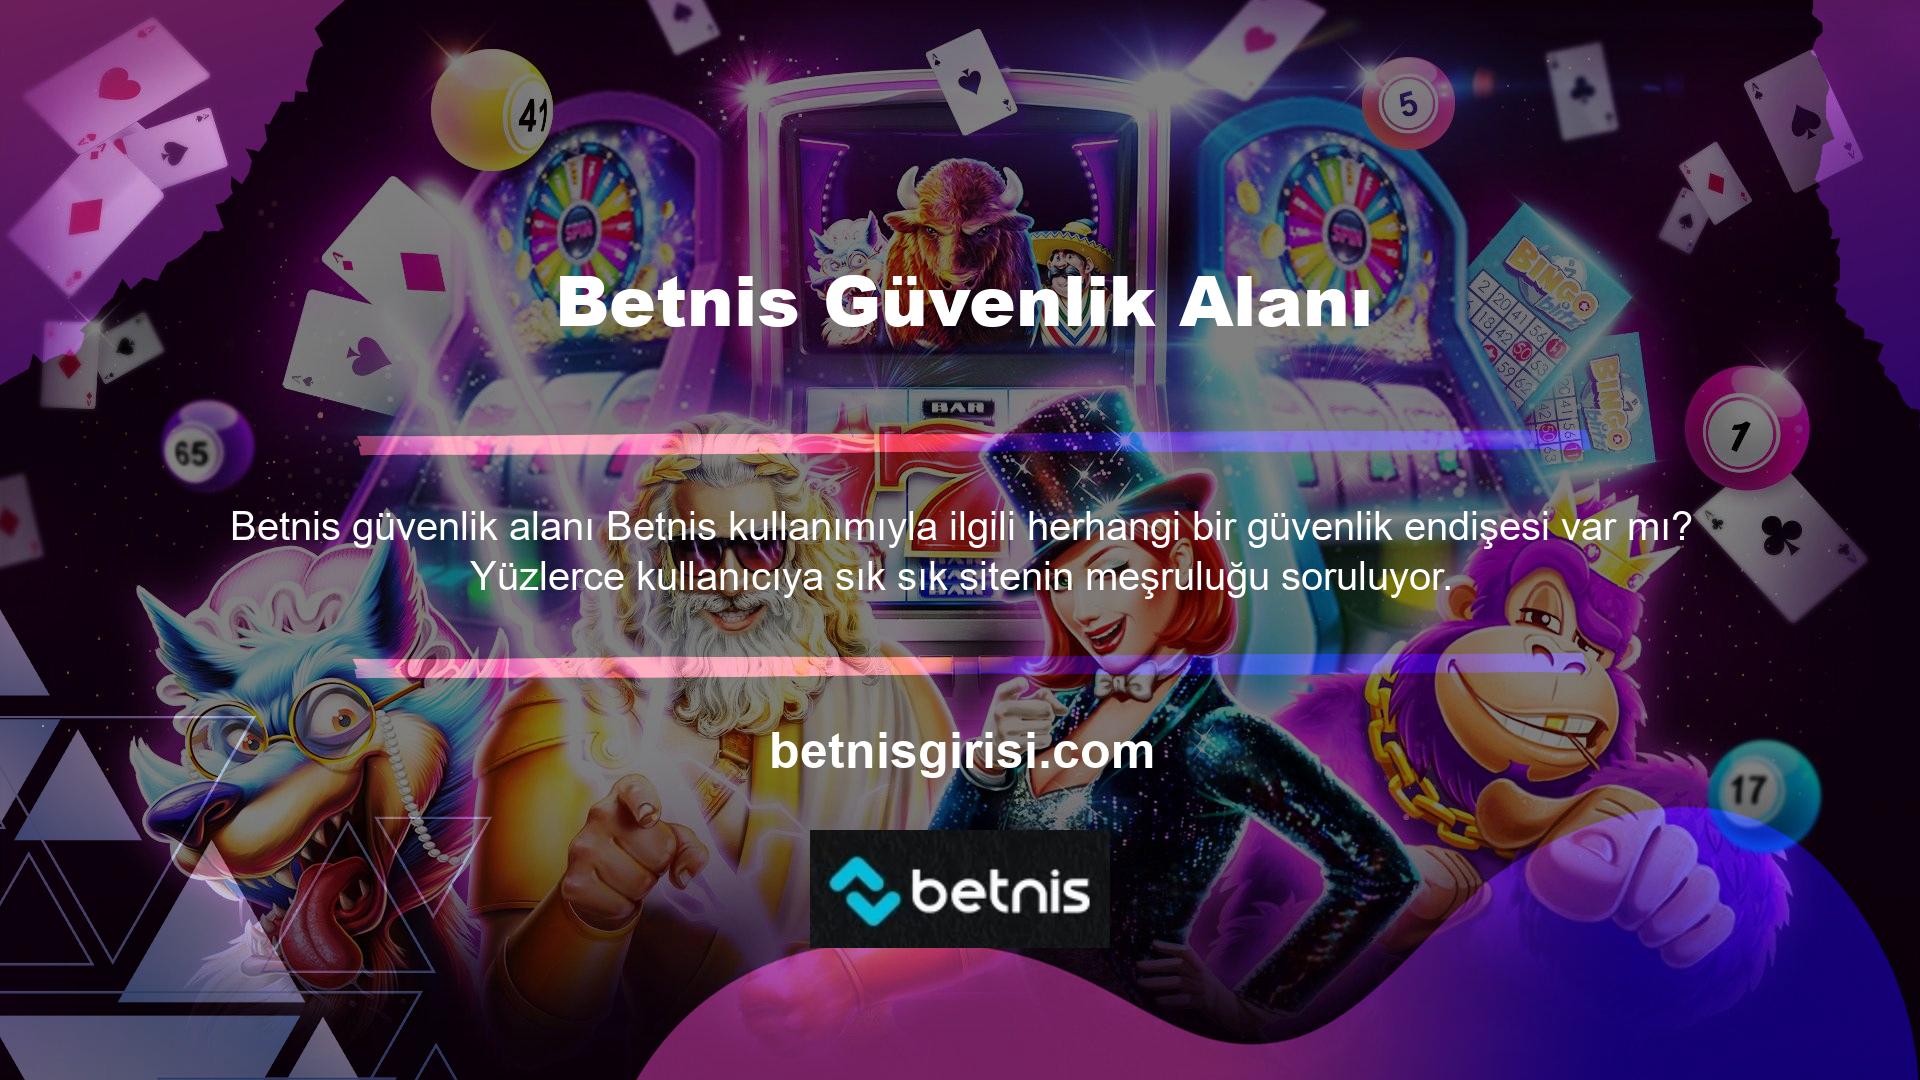 Betnis Yardım Hattı güvenli bir platform mudur? Betnis, casino ve spor bahisleri üyelerinin güvenliğini sağlamak için 7/24 erişilebilen canlı bir yardım hattı oluşturdu